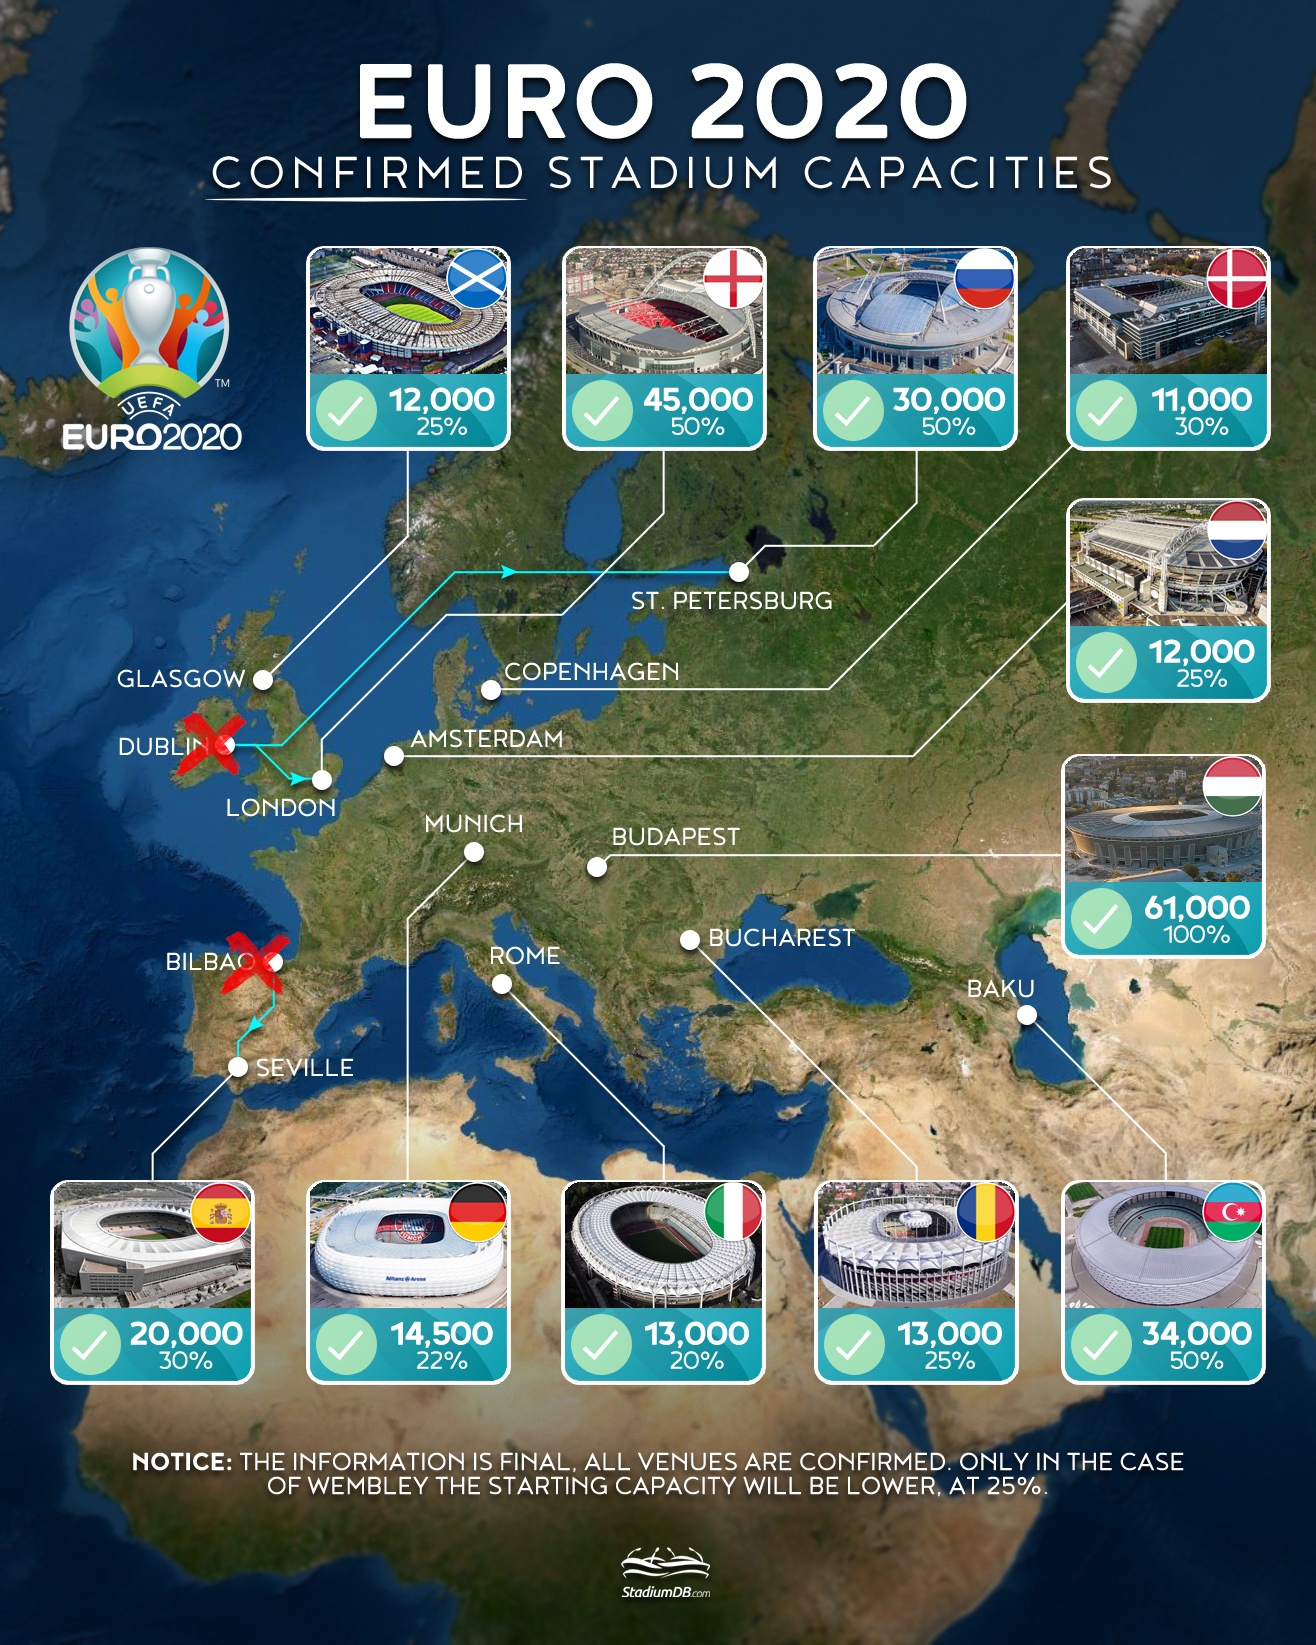 Euro 2020, mapa potwierdzonych miast-gospodarzy